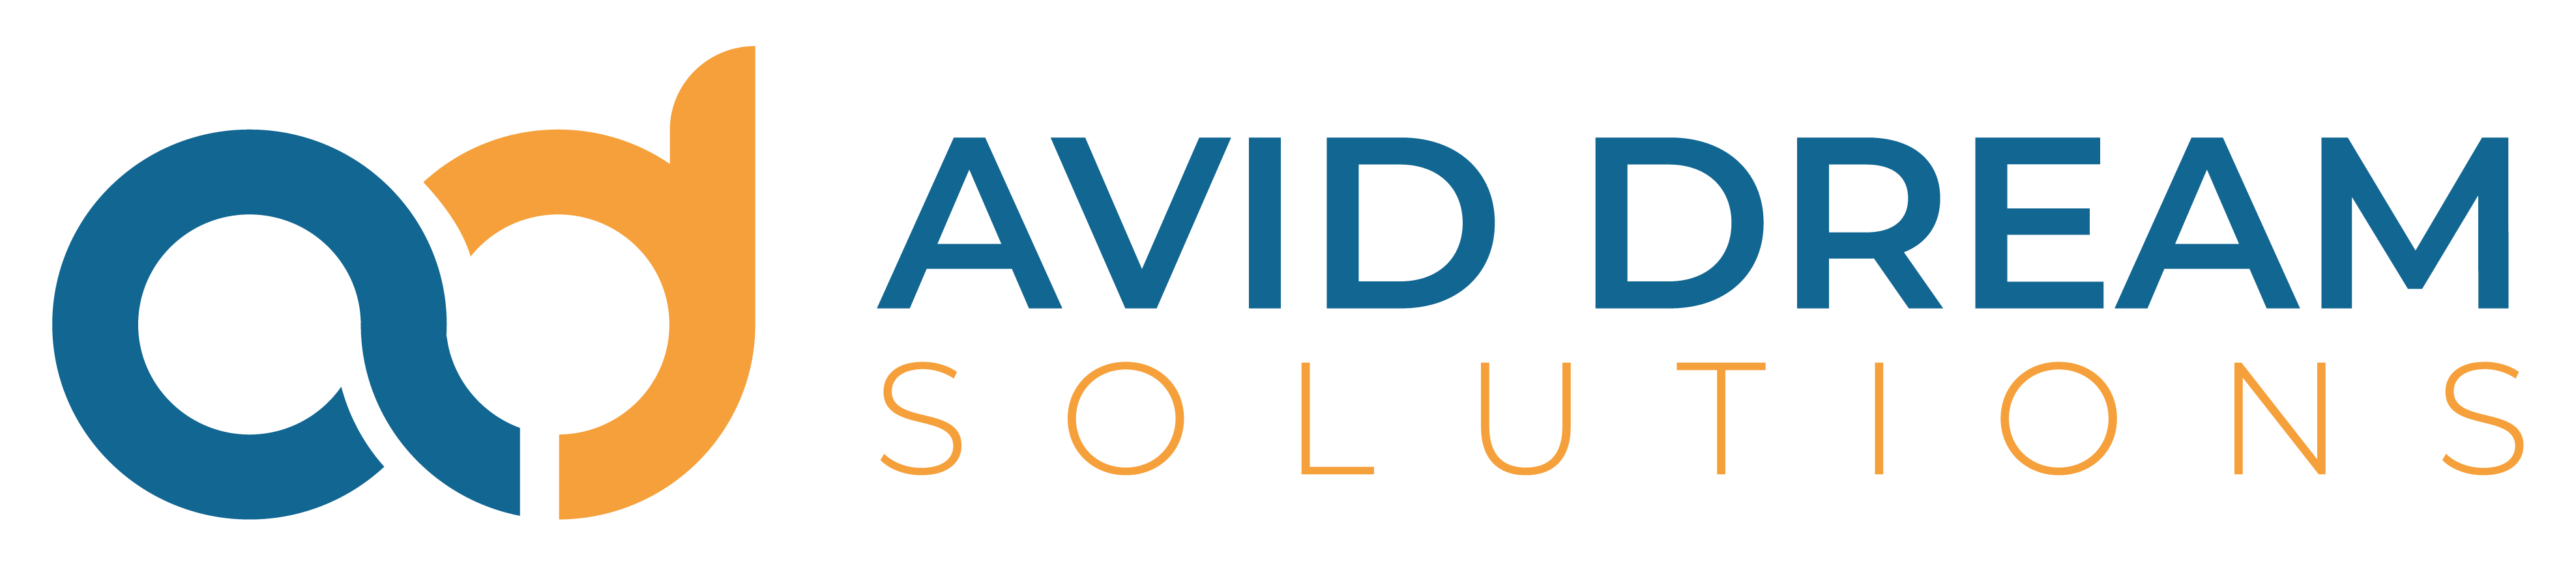 Avid Dream Solutions Logo